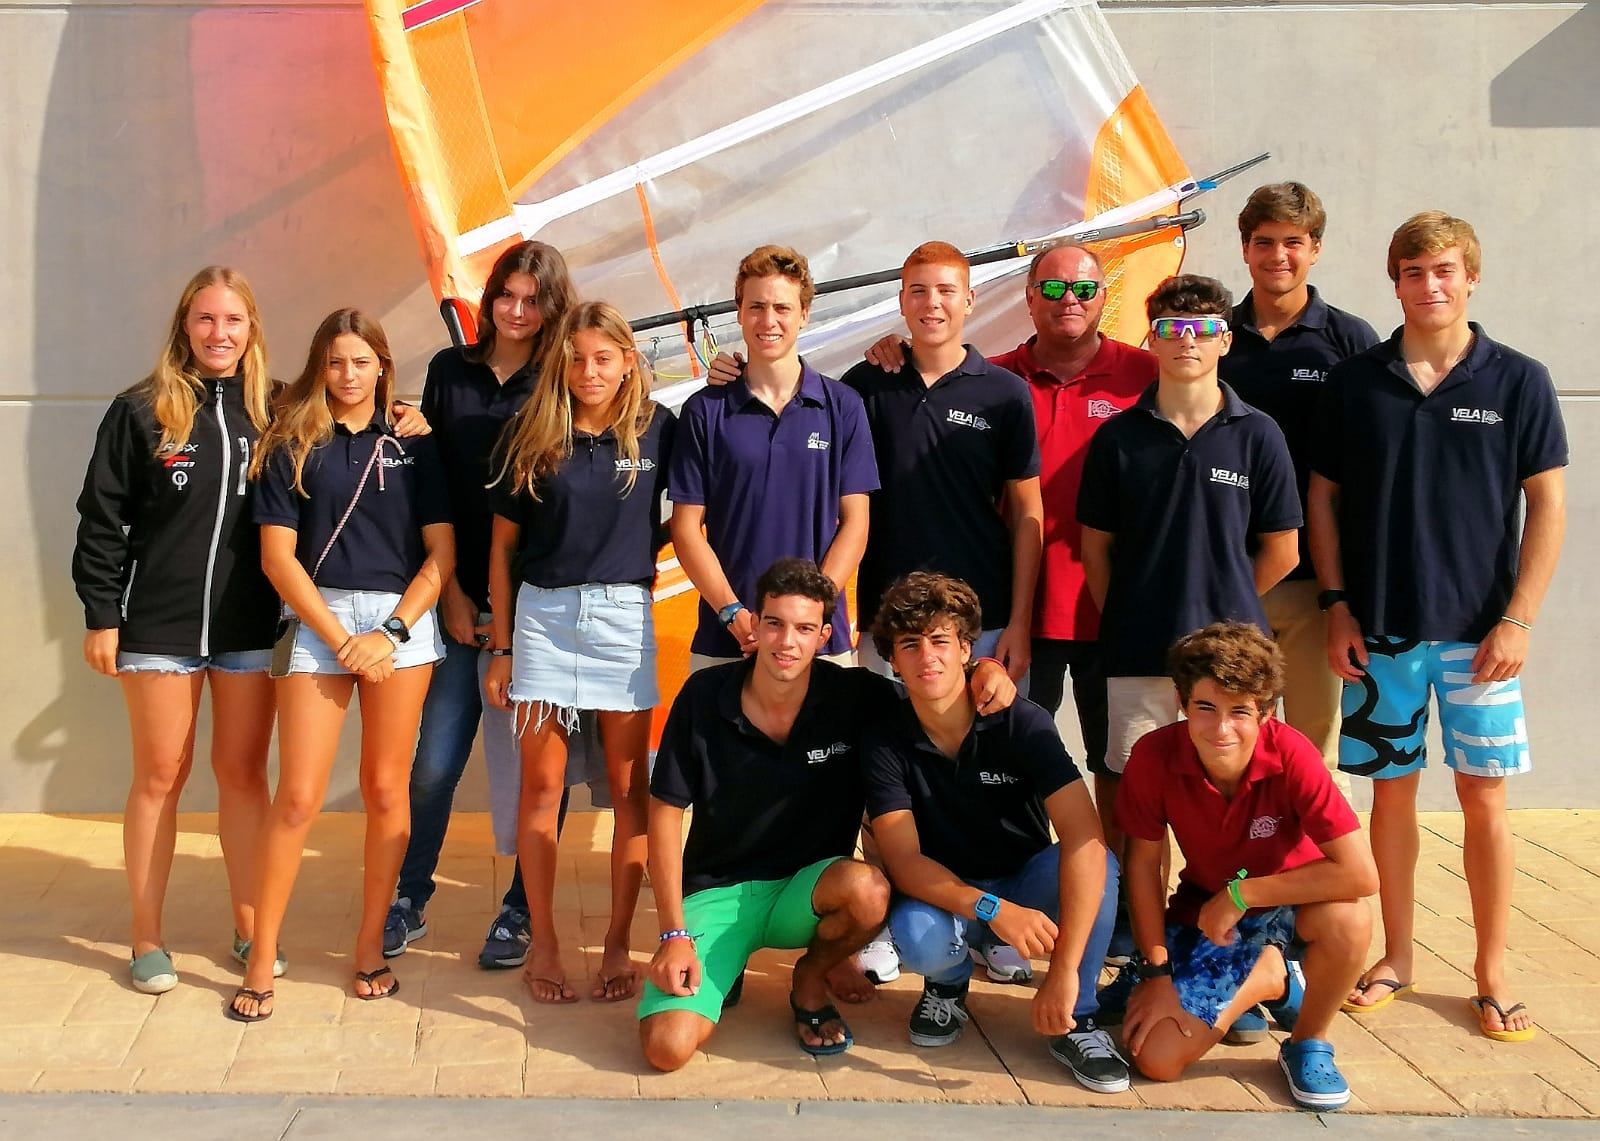 Equipo de windsurf del Club Náutico Sevilla.jpg